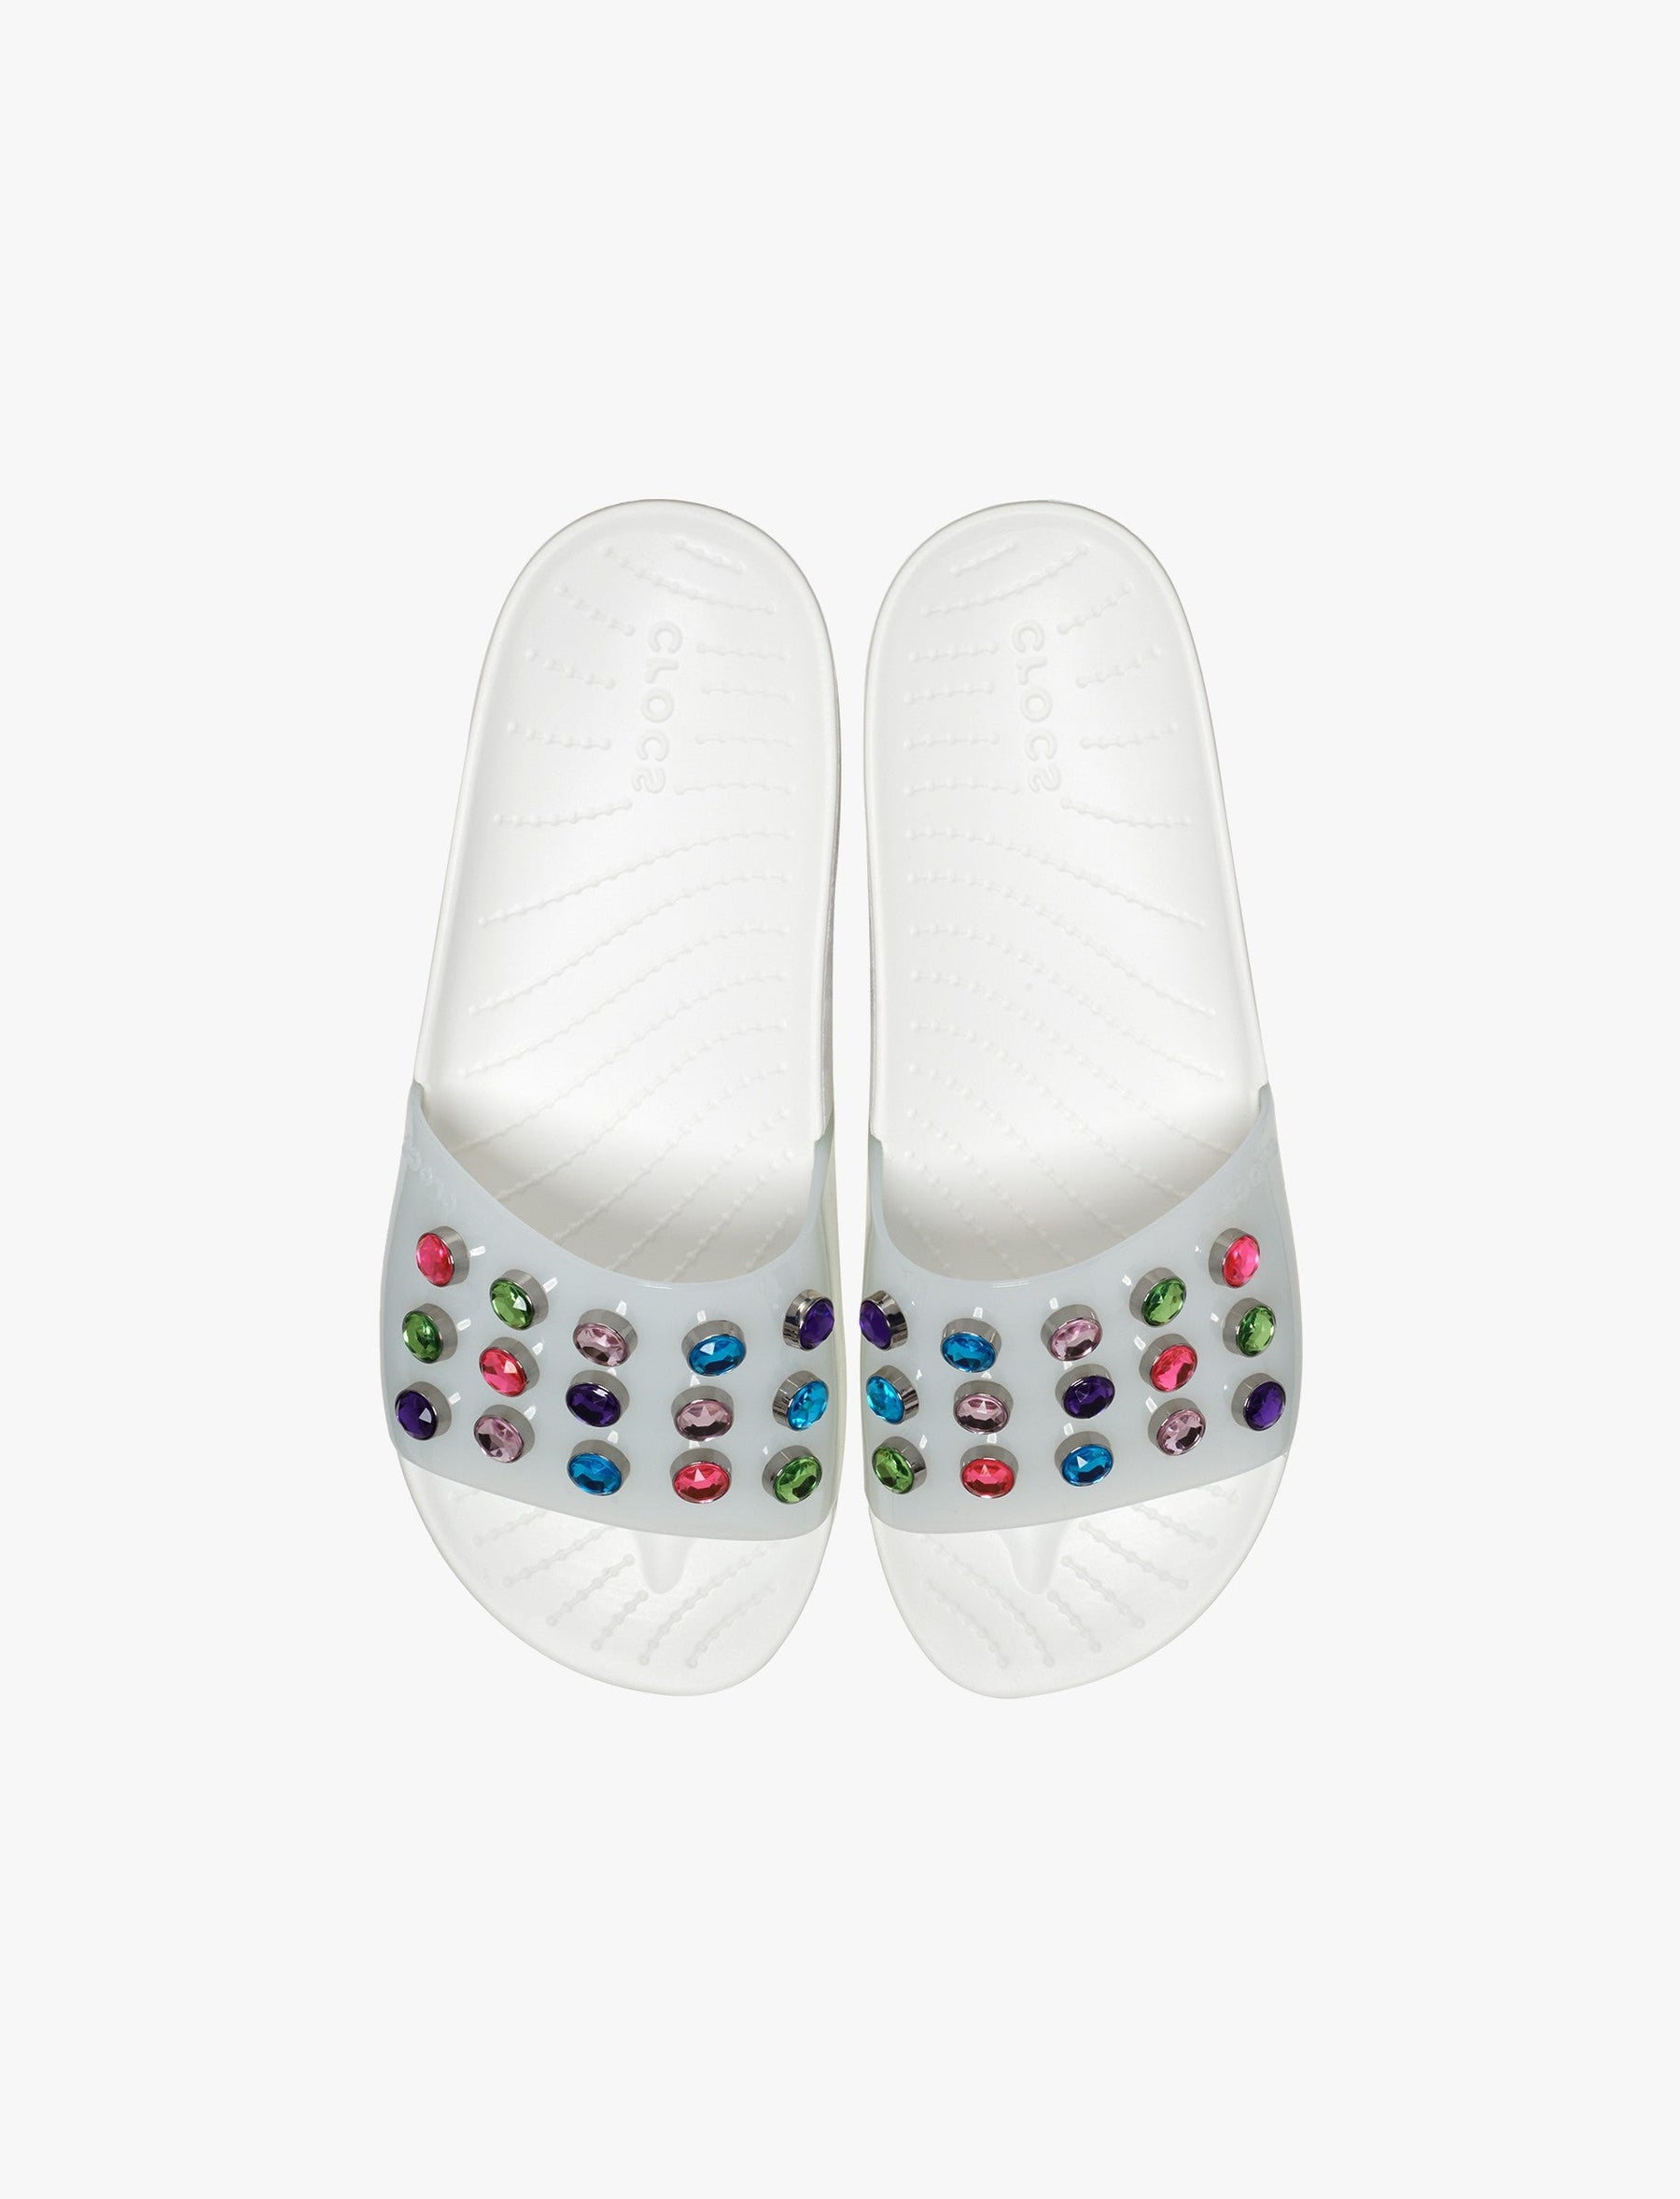 Crocs Splash Gem Slide - כפכפי סלייד קרוקס לנשים בצבע לבן/מולטי-Crocs-41-42-נאקו